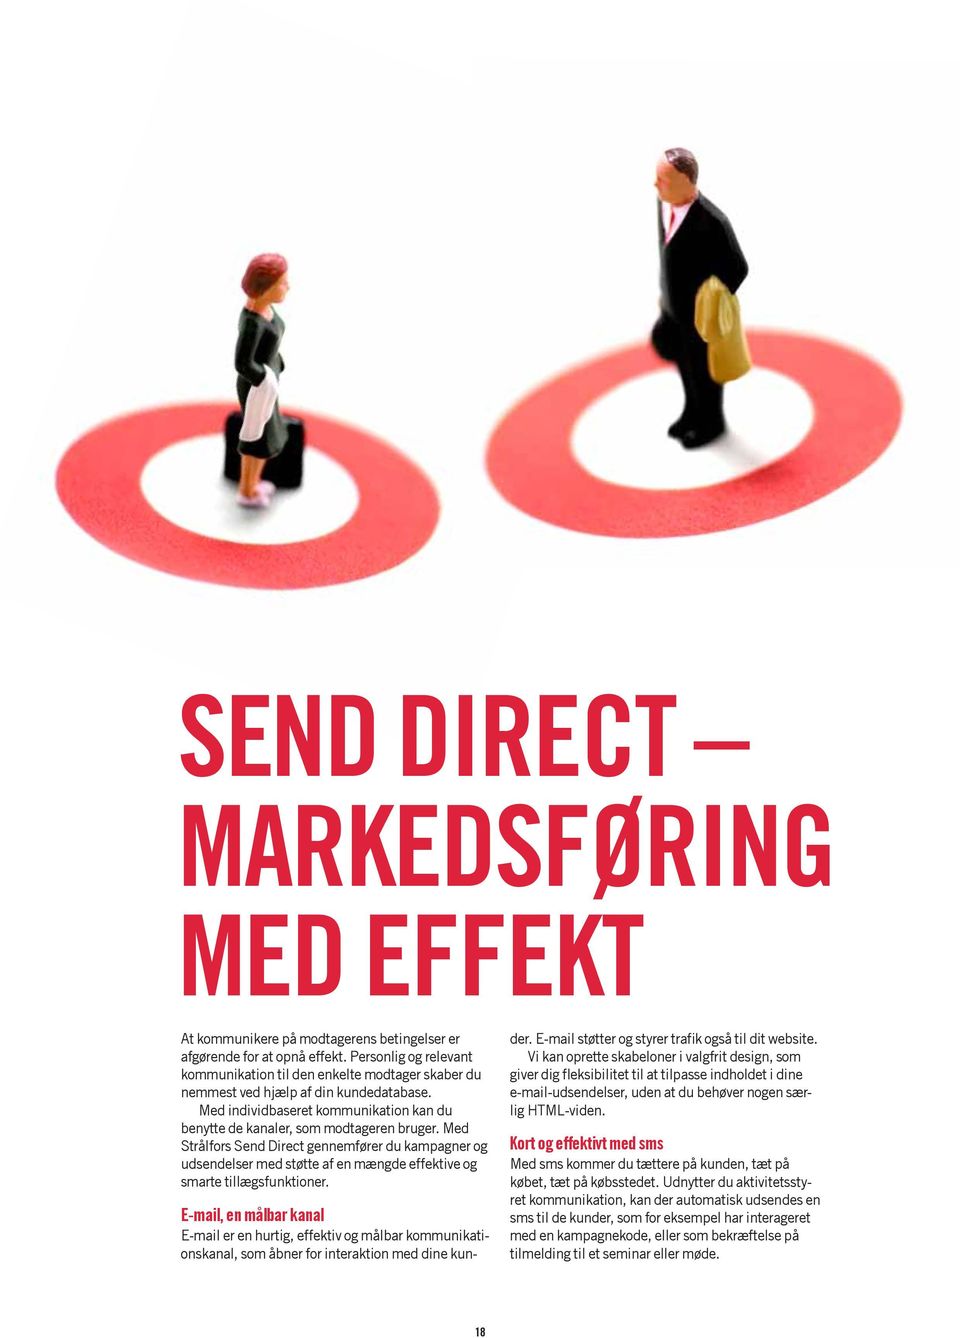 Med Strålfors Send Direct gennemfører du kampagner og udsendelser med støtte af en mængde effektive og smarte tillægsfunktioner.